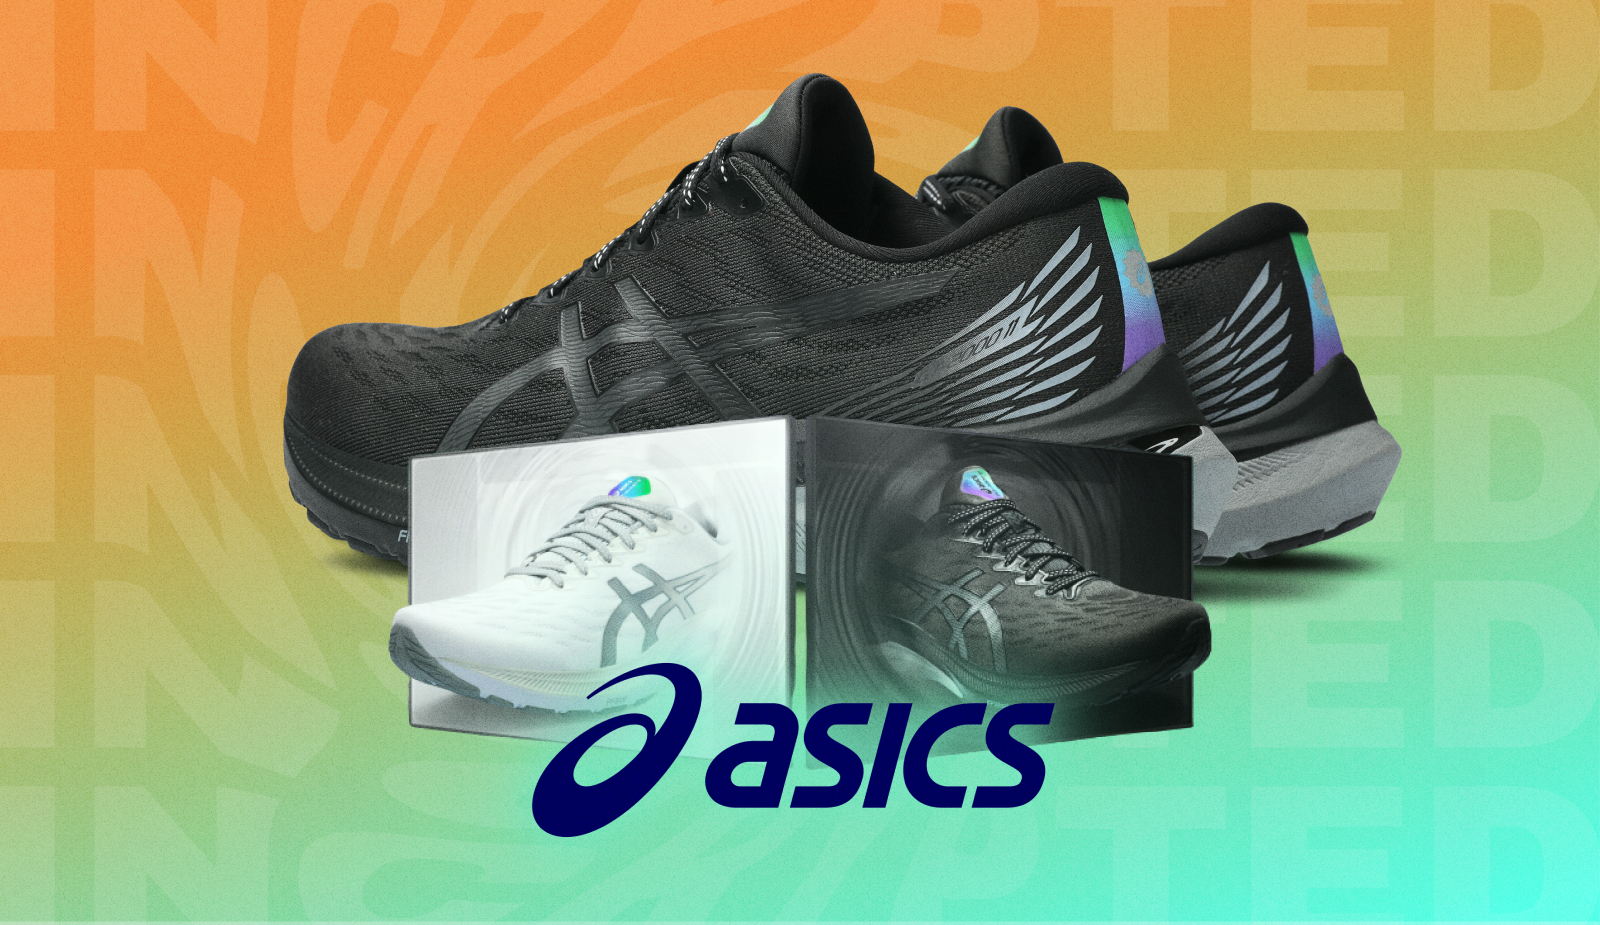 ASICS выпустили специальные кроссовки для фанатов Solana и STEPN. Заглавный коллаж новости.